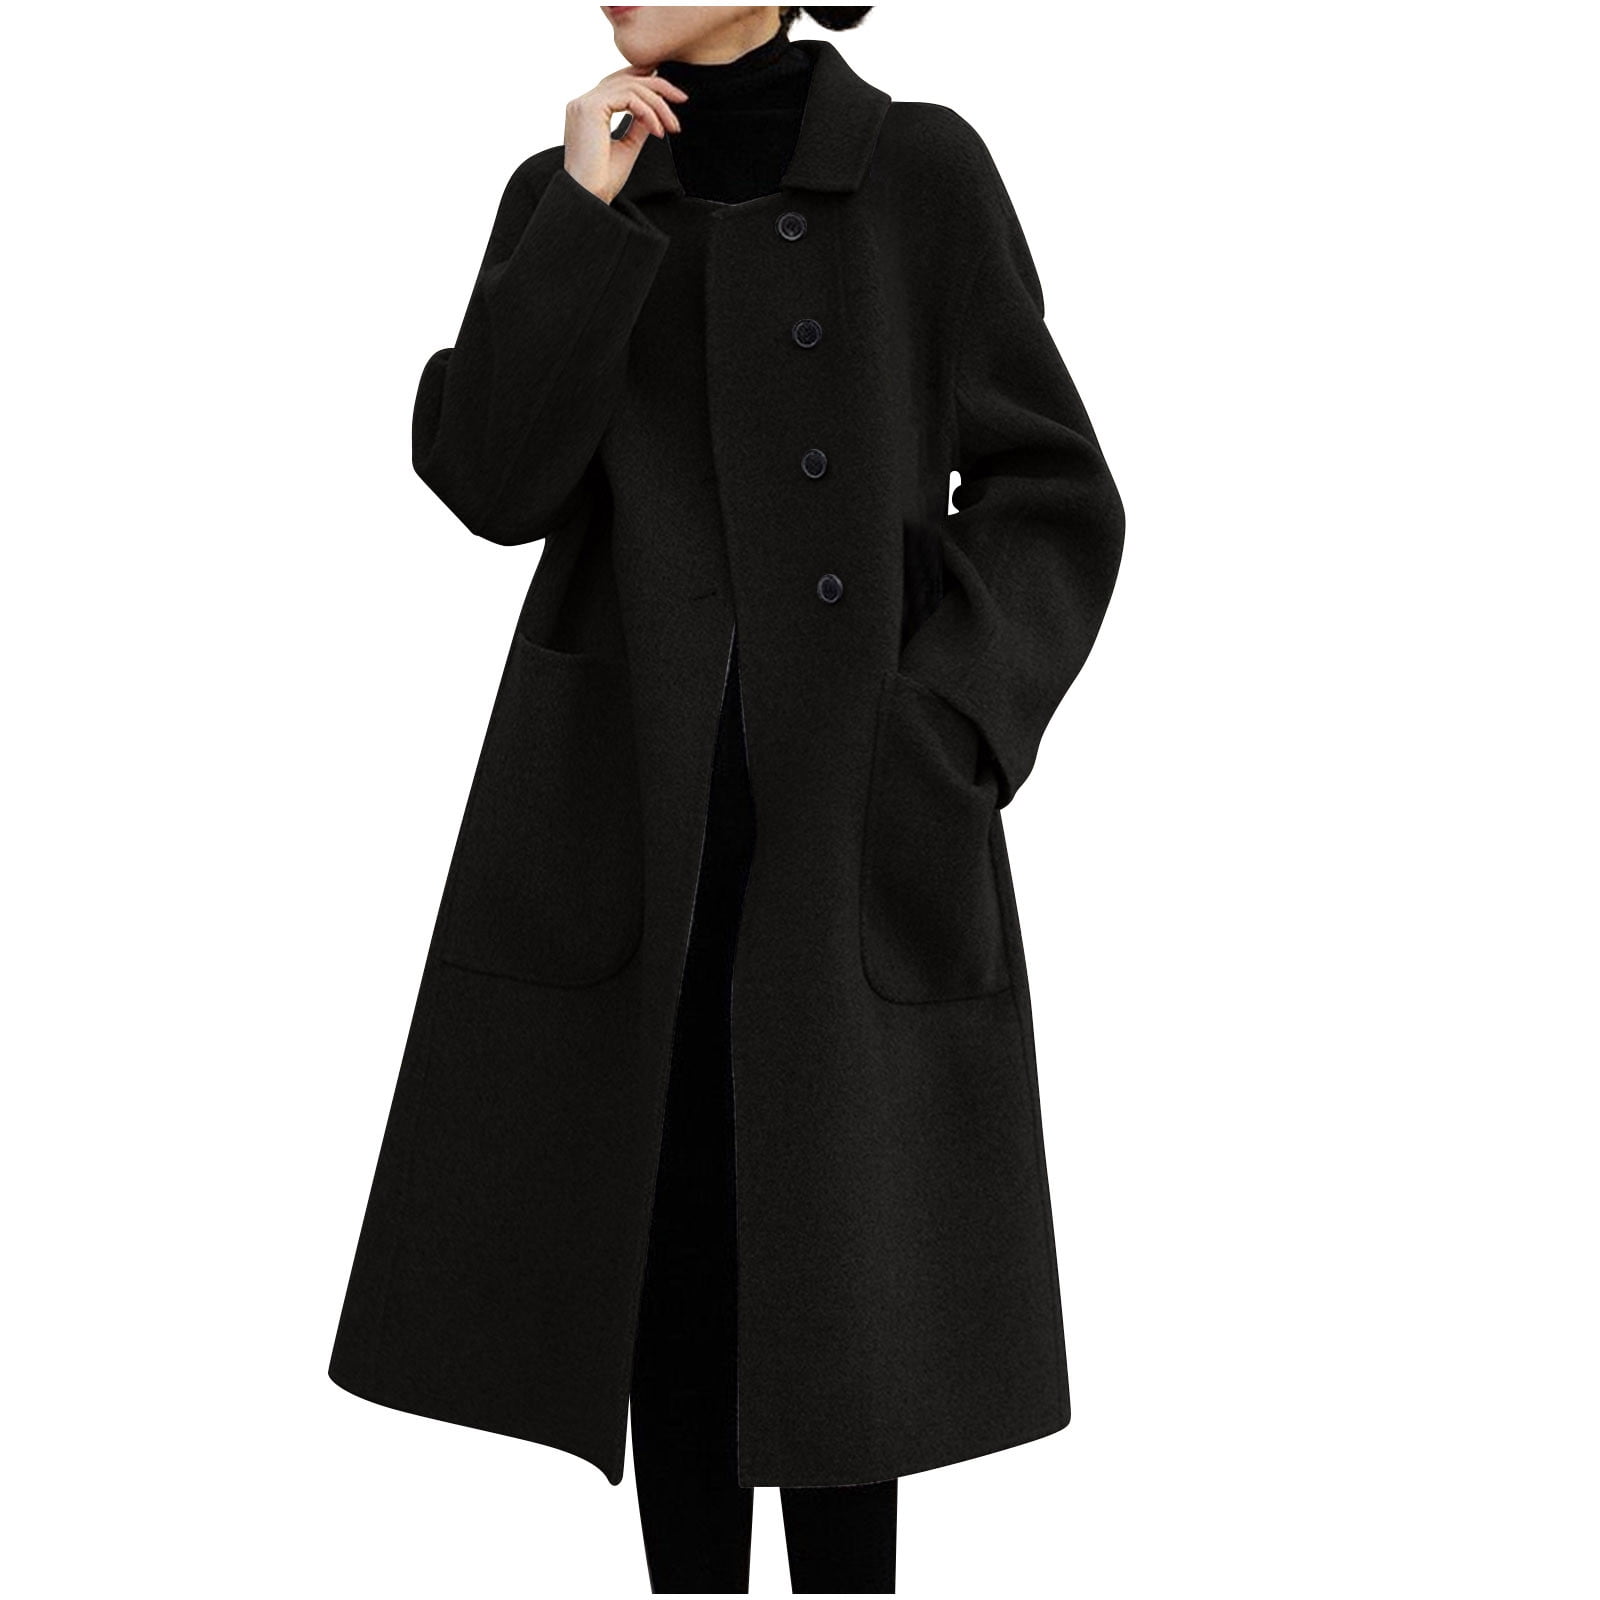 XFLWAM Winter Coats for Women Casual Soild Long Sleeve Long Cardigan ...